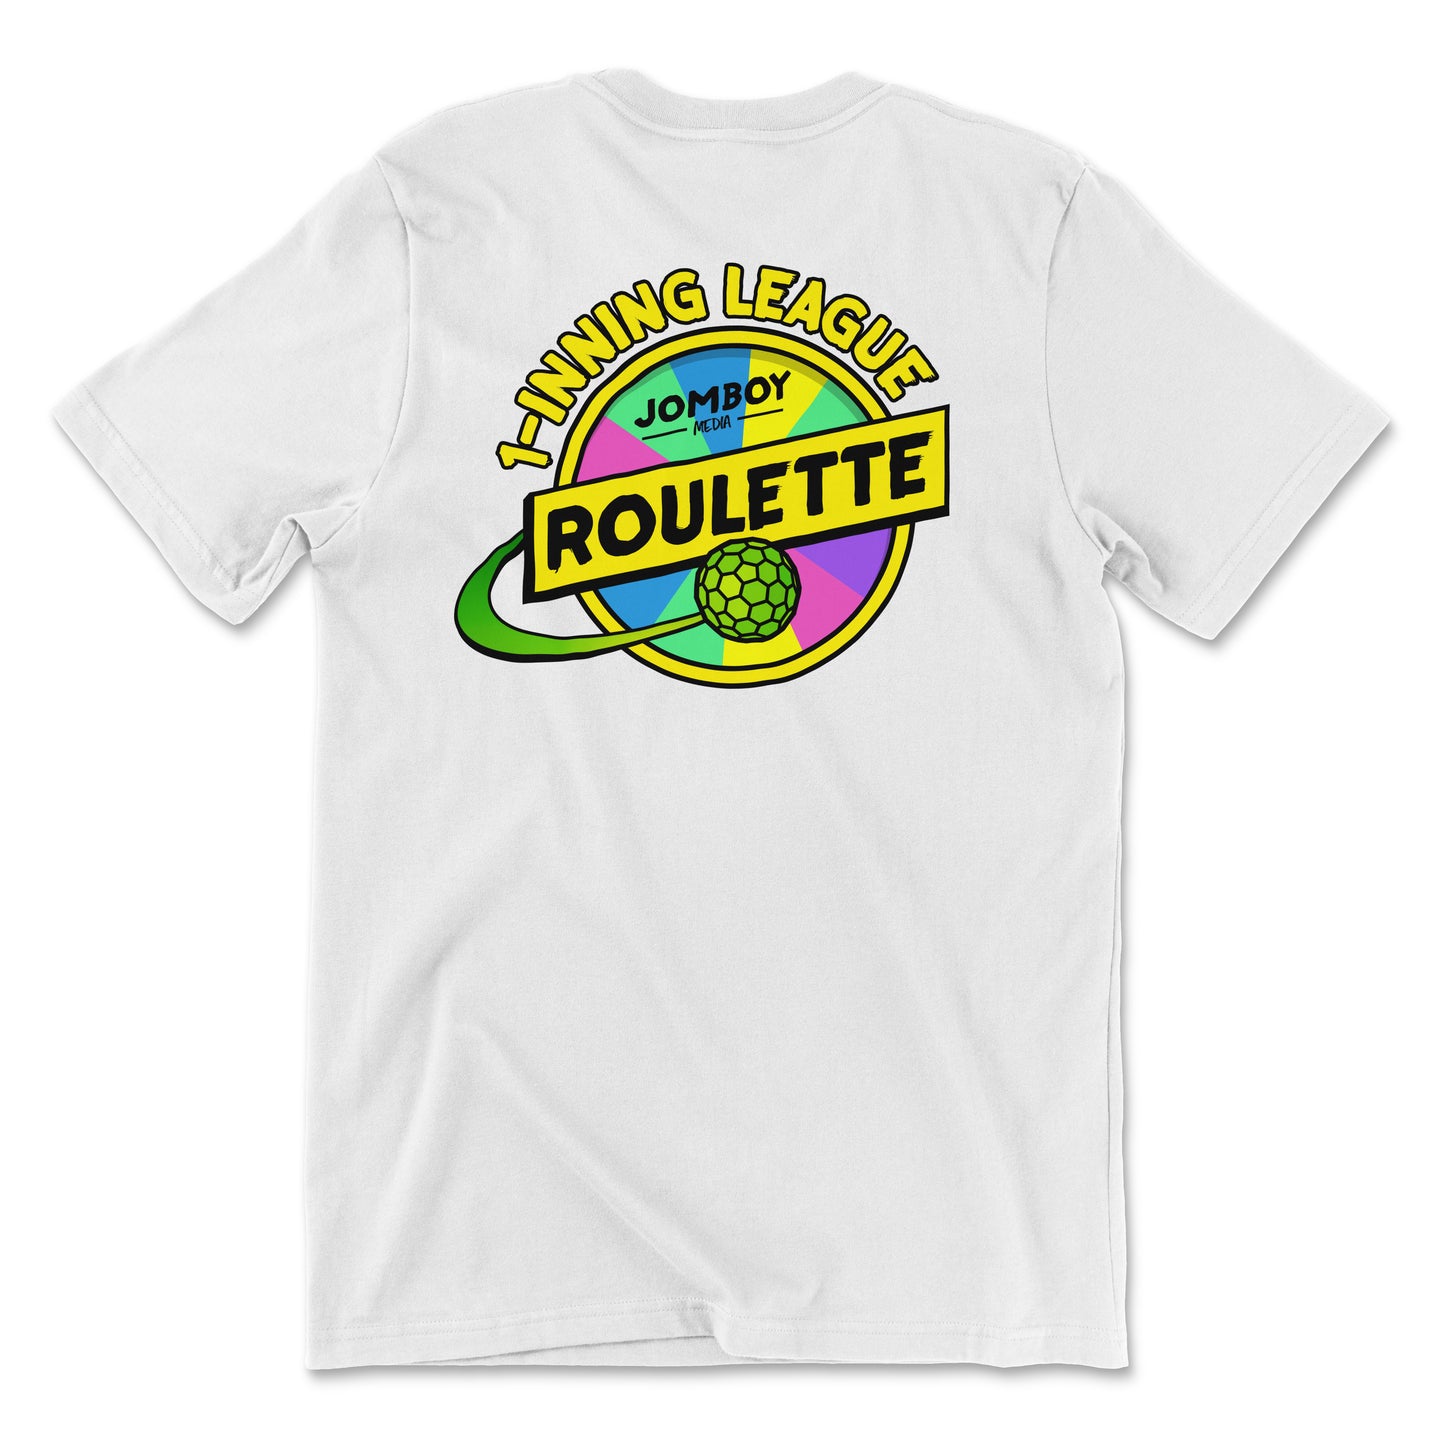 Team K-Mac 1-Inning League Roulette | T-Shirt